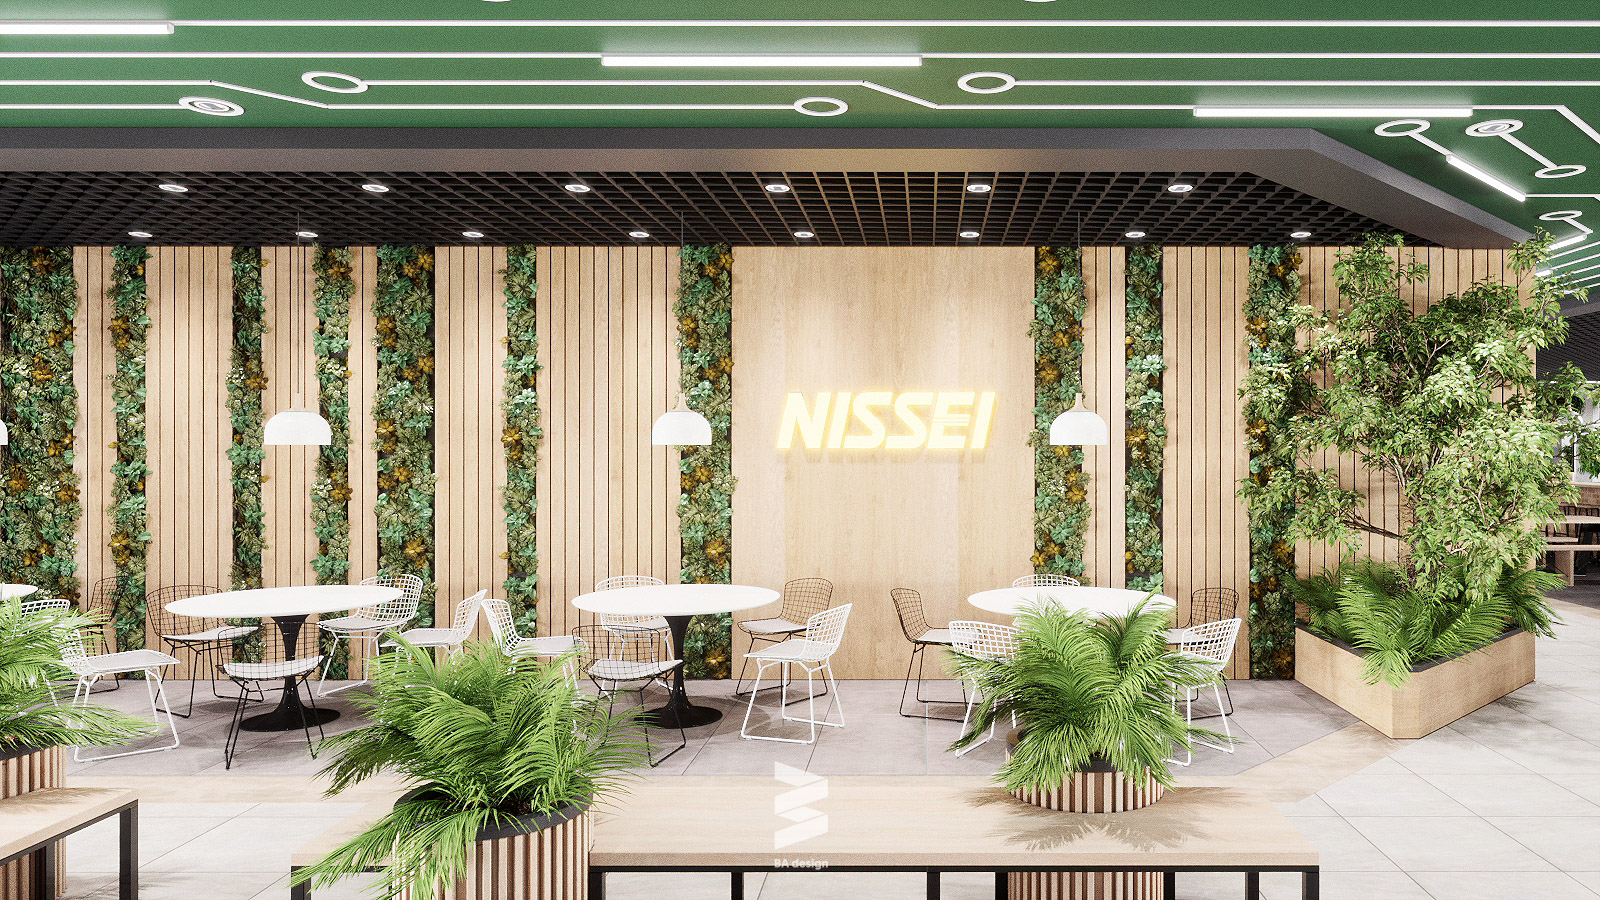 Thiết kế canteen nissei tràn ngập sắc xanh